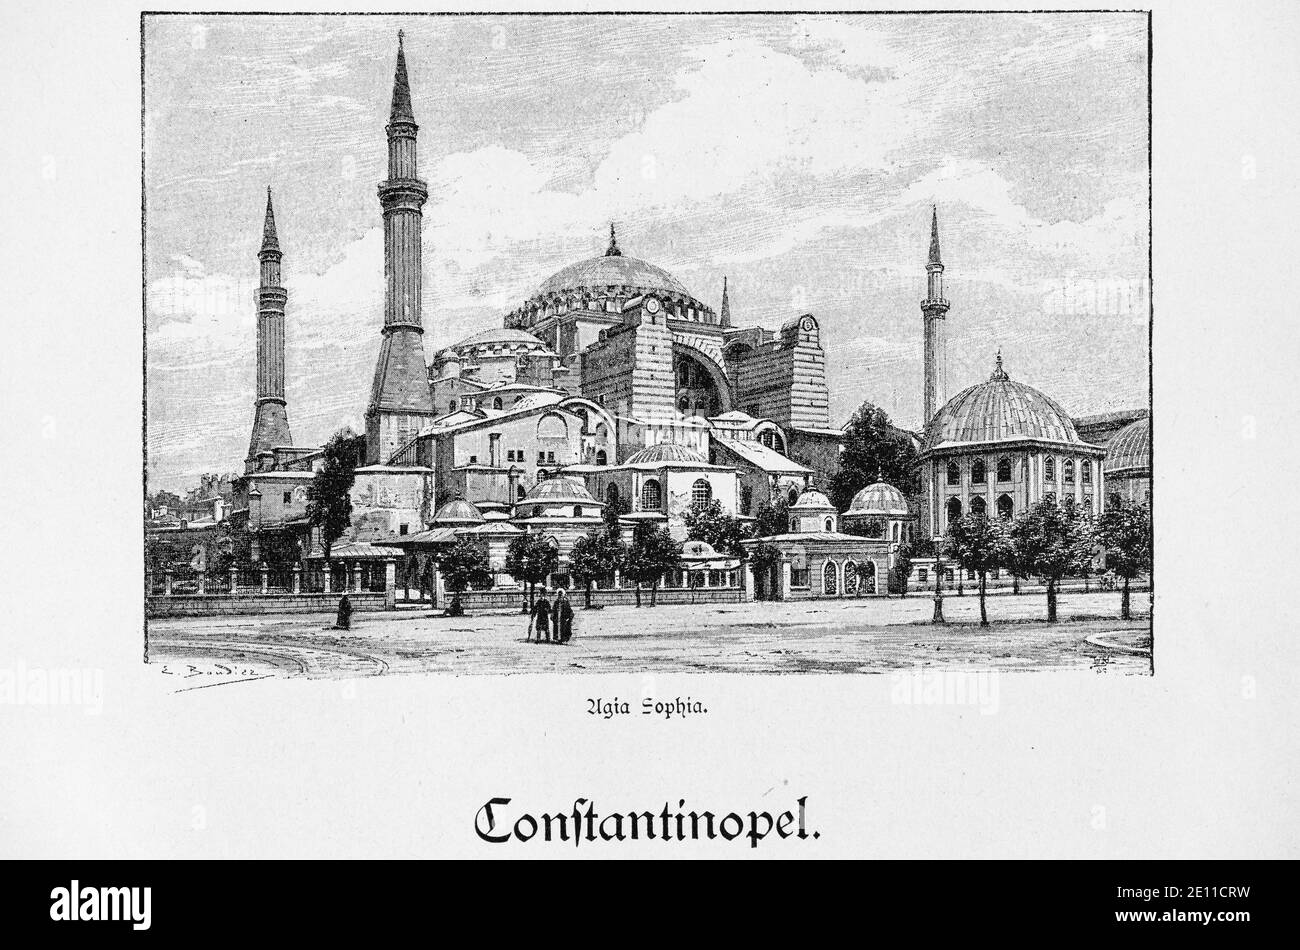 Vista della Moschea 'Agia Sophia' o Hagia Sophia, Constantinopel, Turchia, illustrazioni da 'Die Hauptstädte der Welt', Brelasu circa 1897 Foto Stock